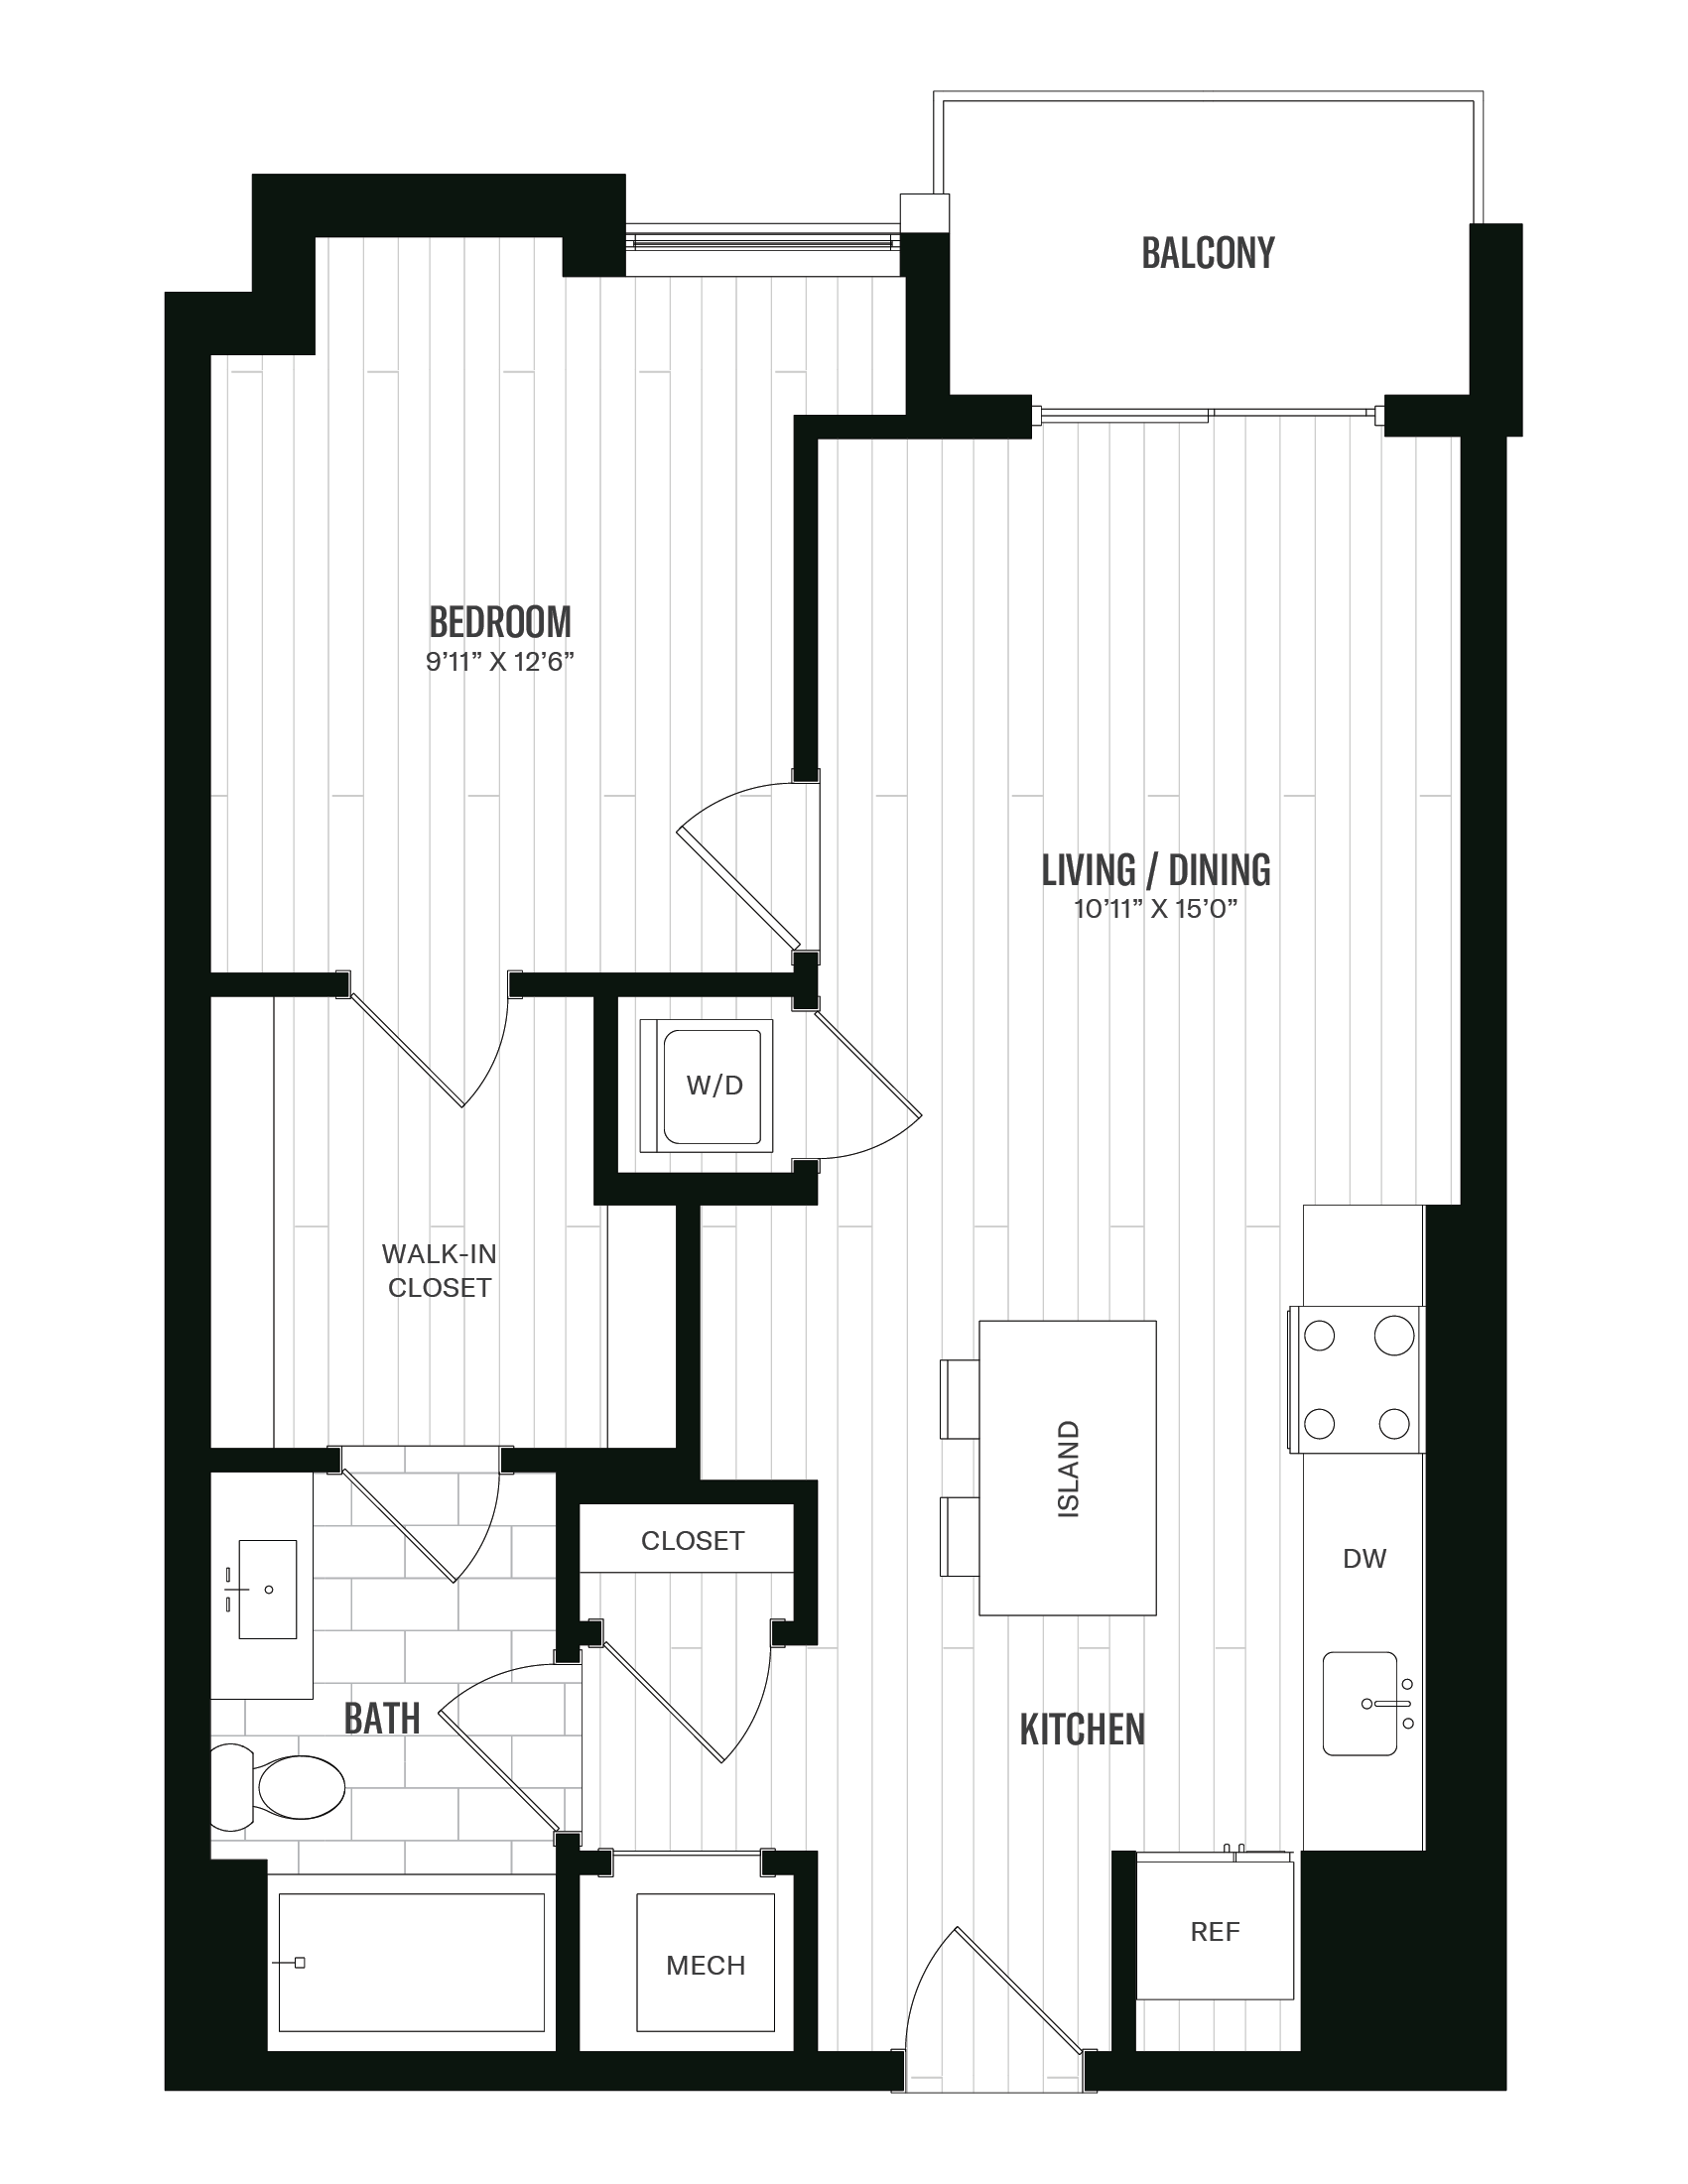 Floorplan image of unit 408